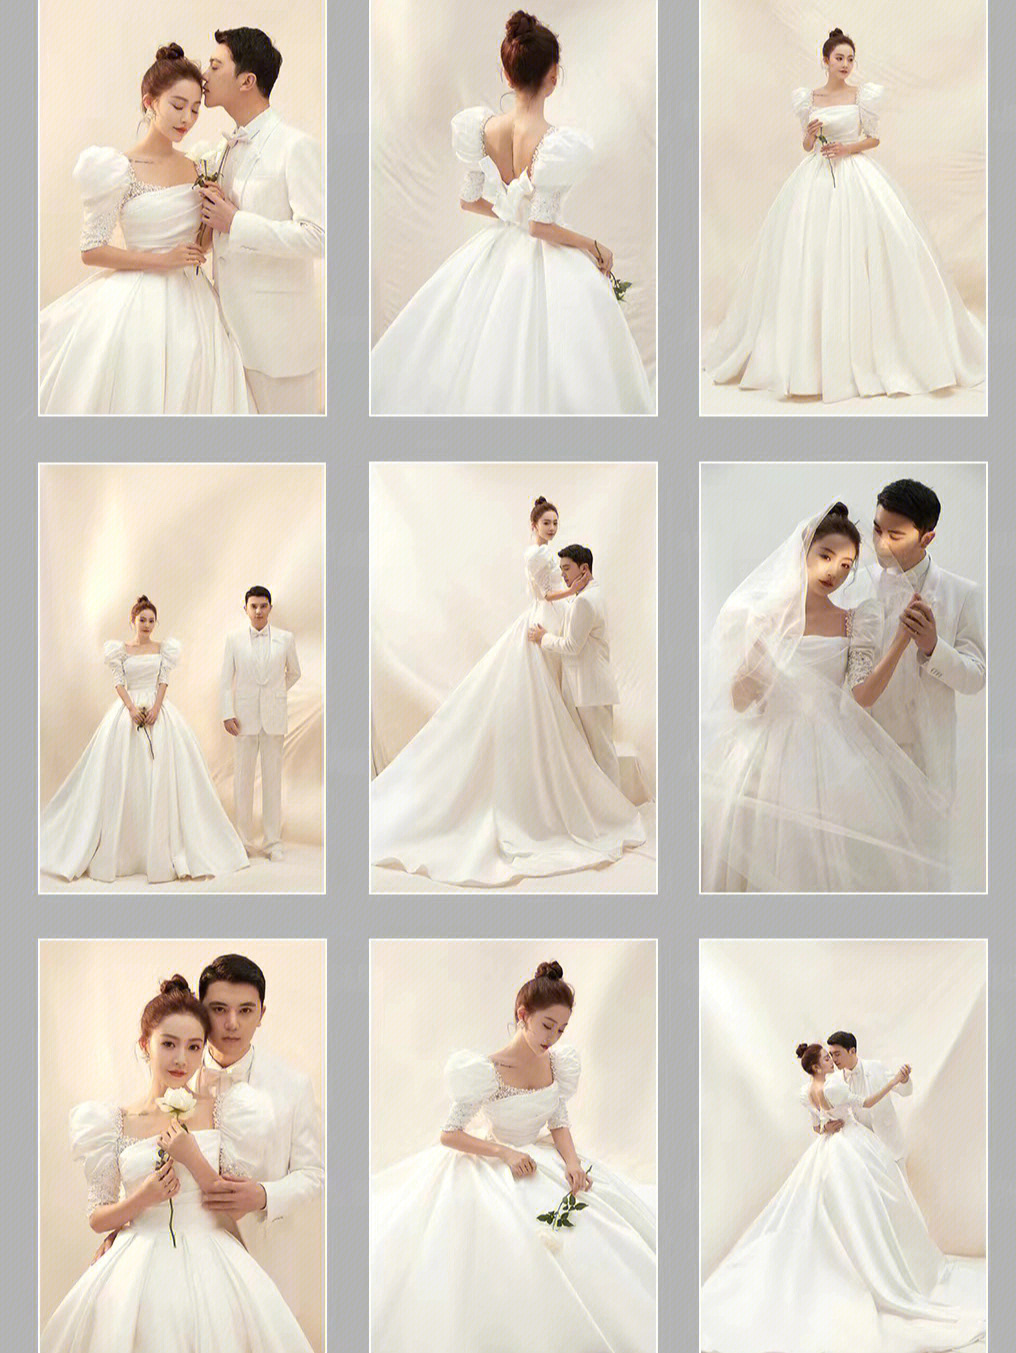 婚纱类型分类图片